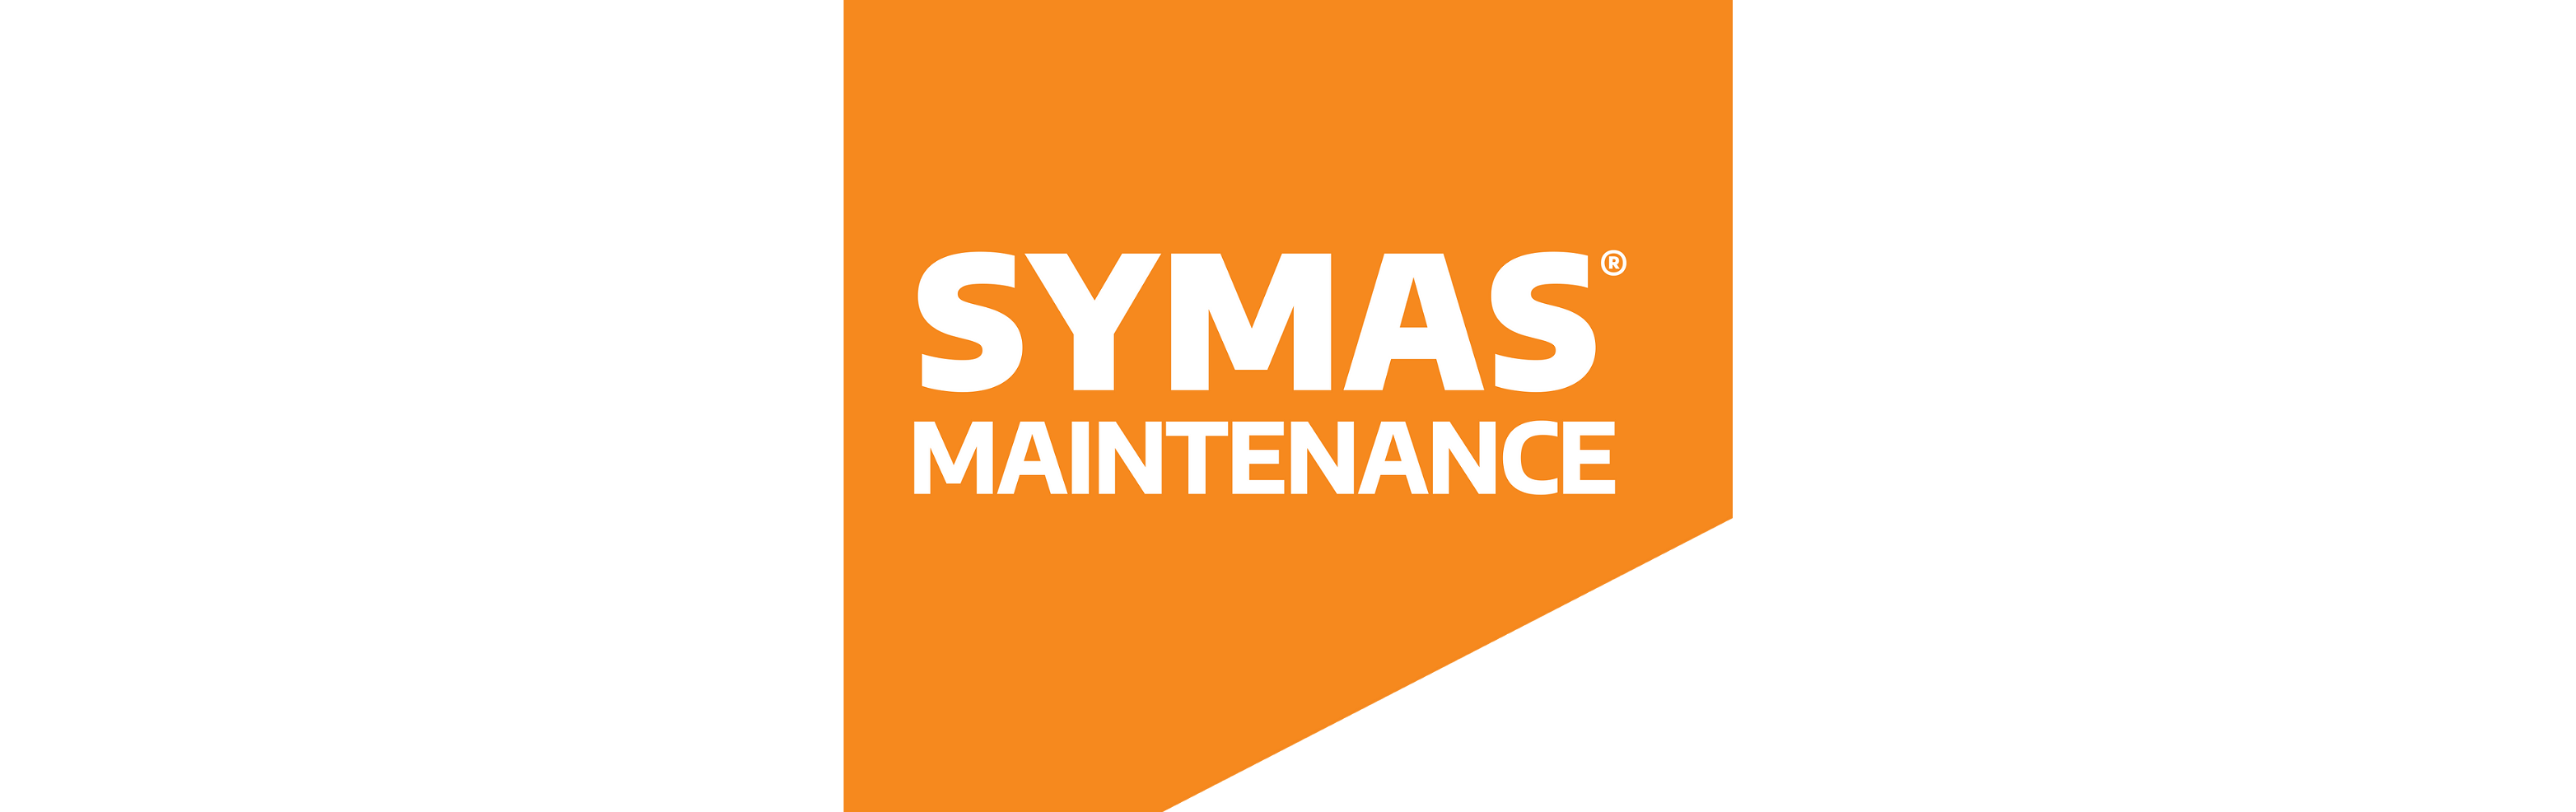 symas logo